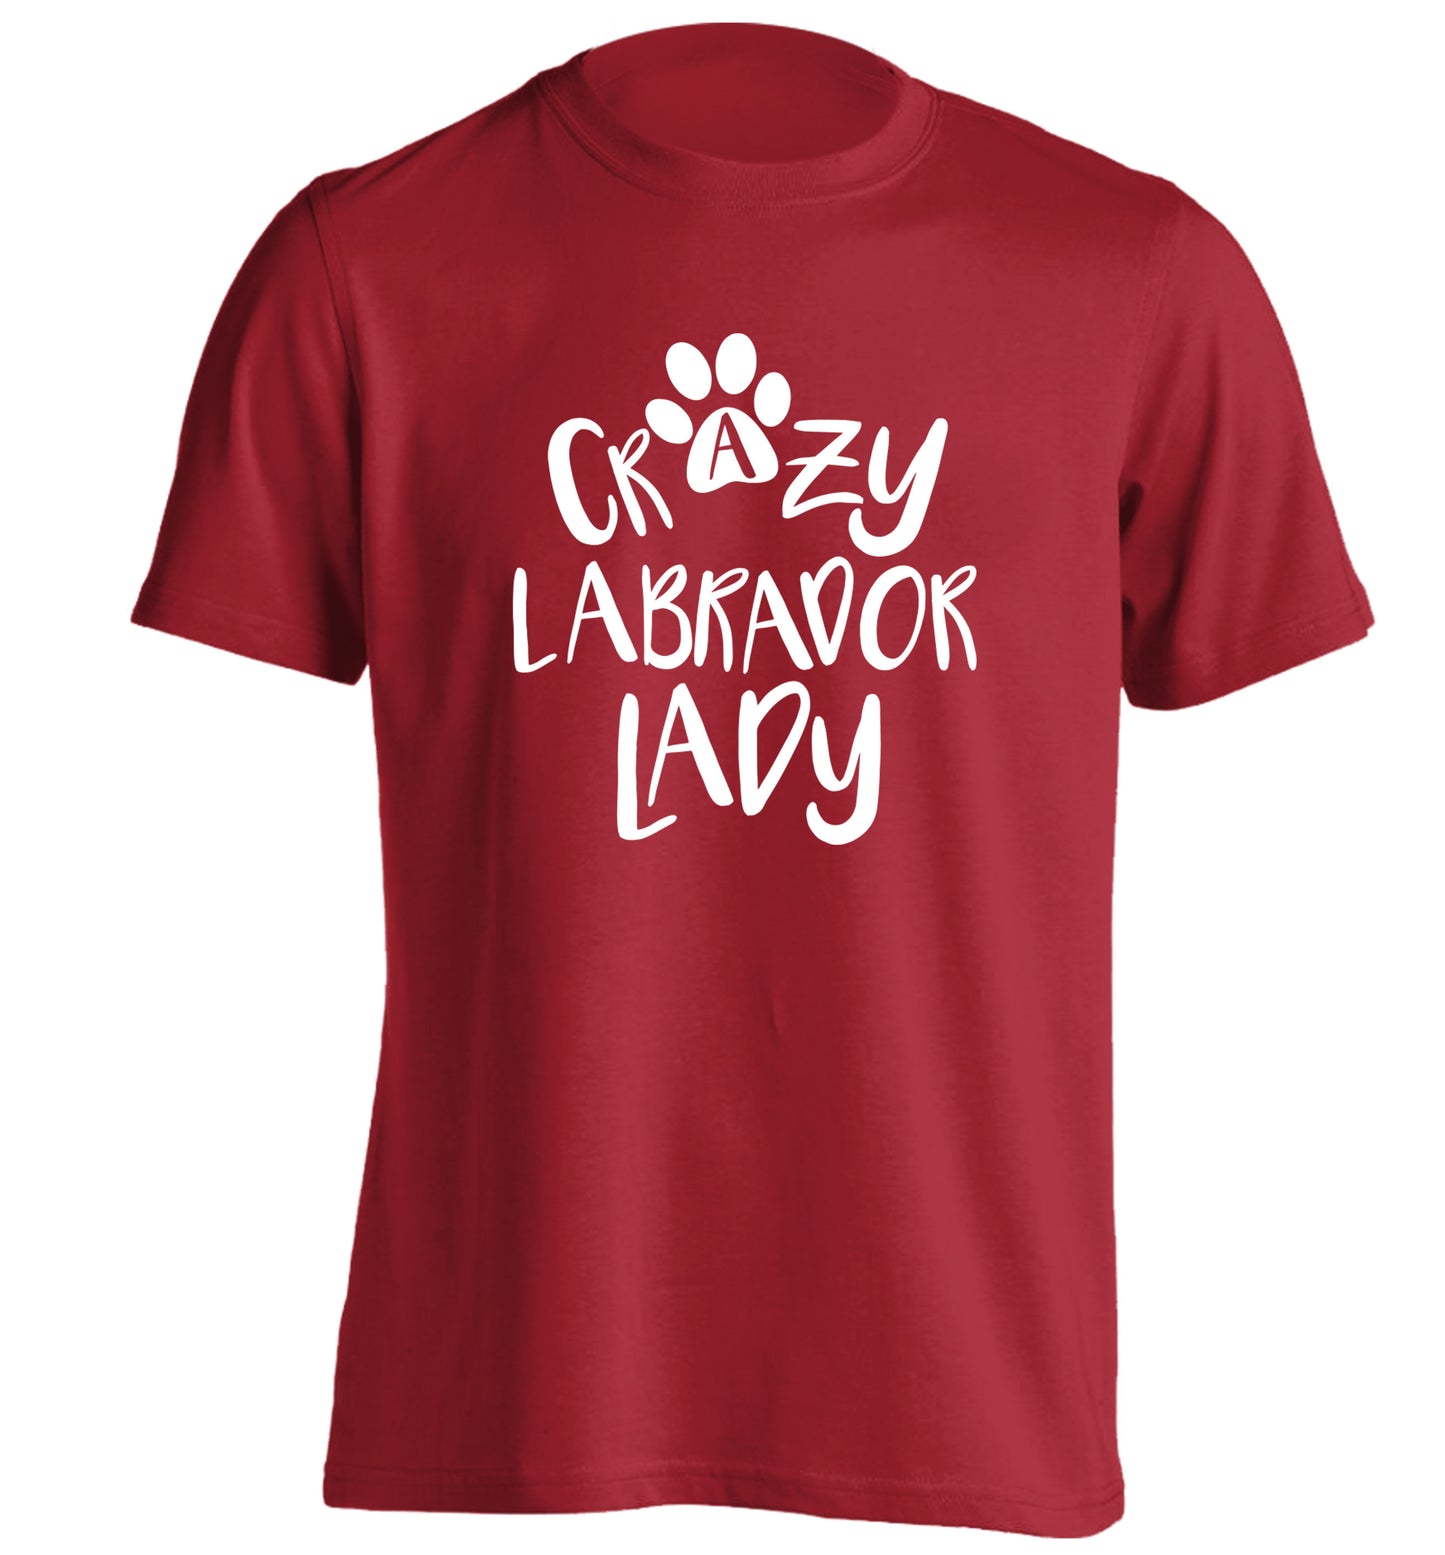 Crazy labrador lady adults unisex red Tshirt 2XL